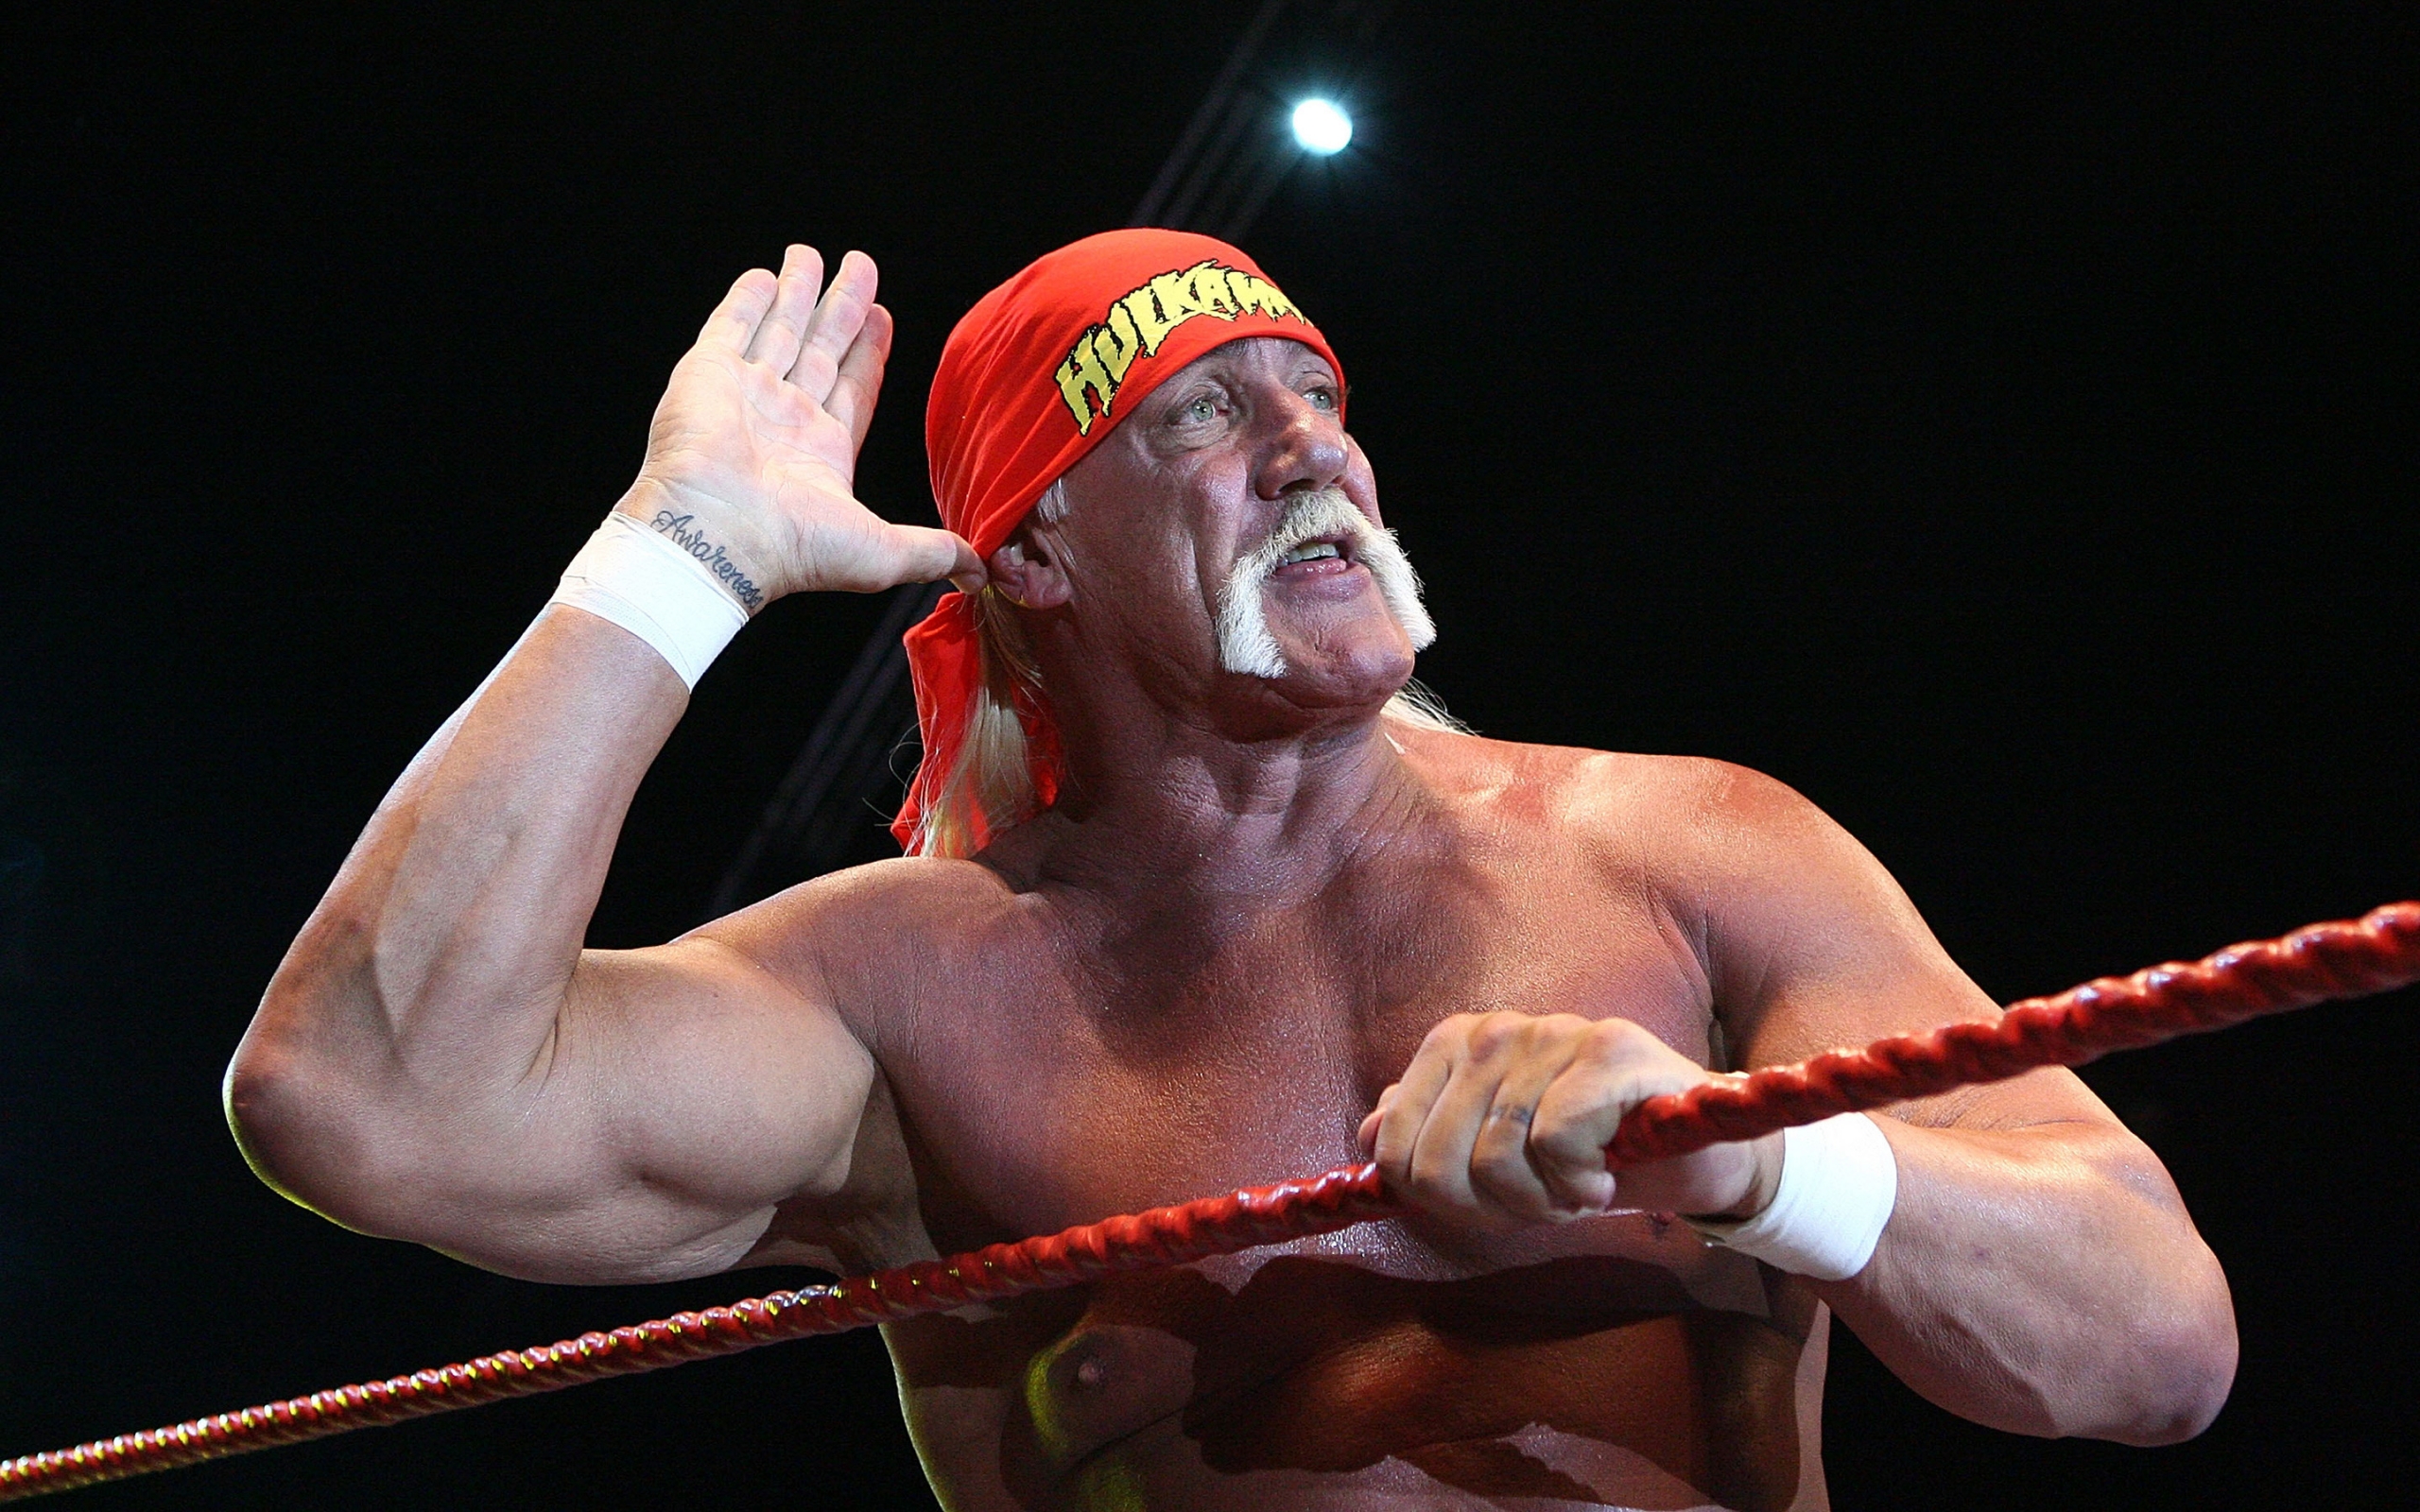 Hulk Hogan Salute for 2560 x 1600 widescreen resolution